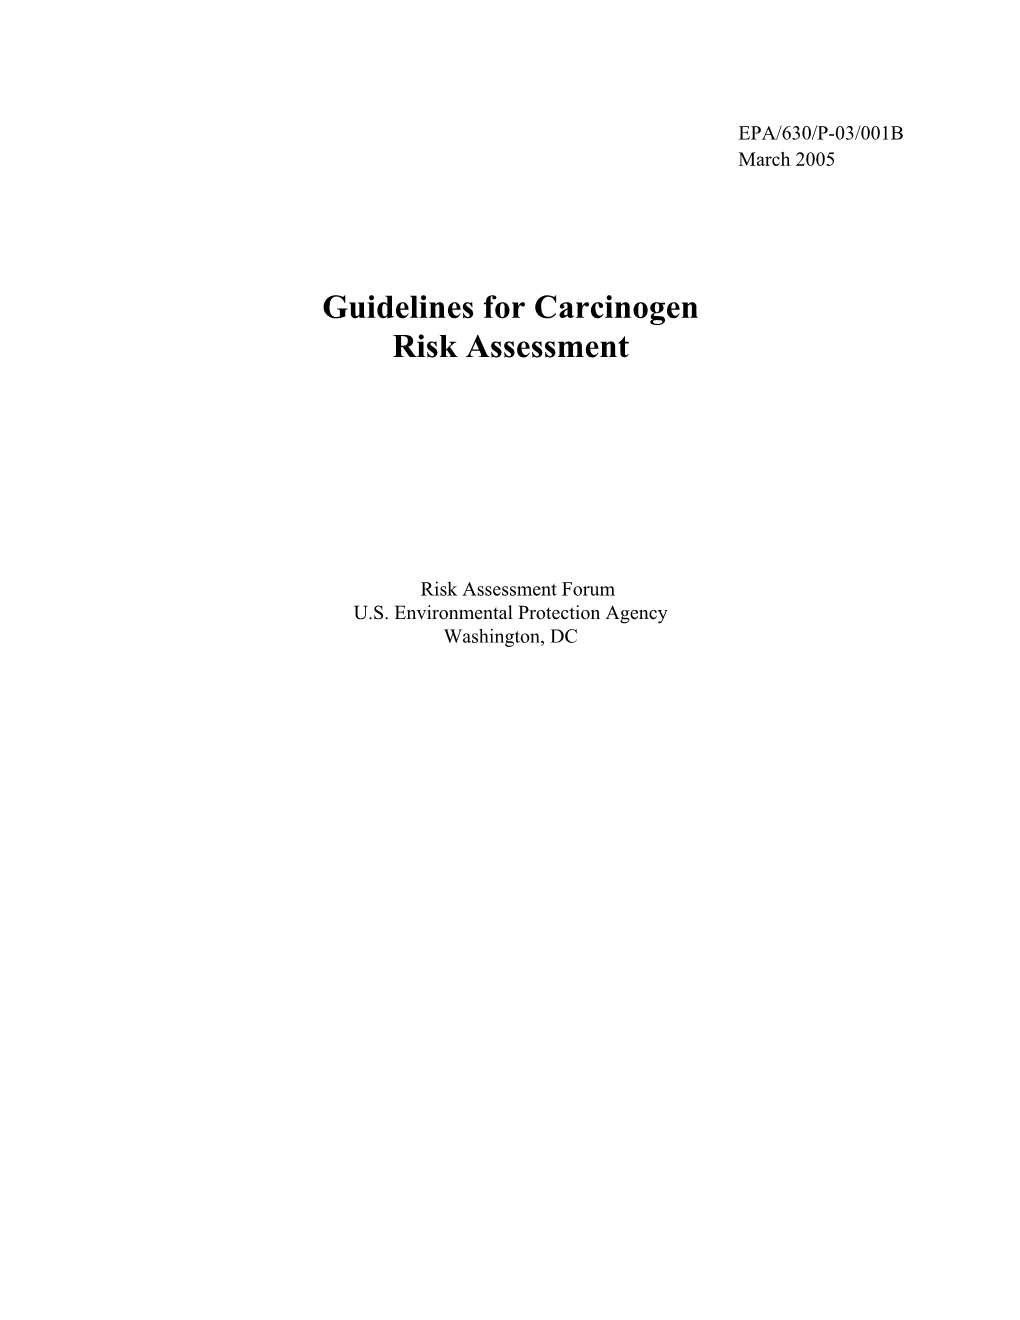 Guidelines for Carcinogen Risk Assessment